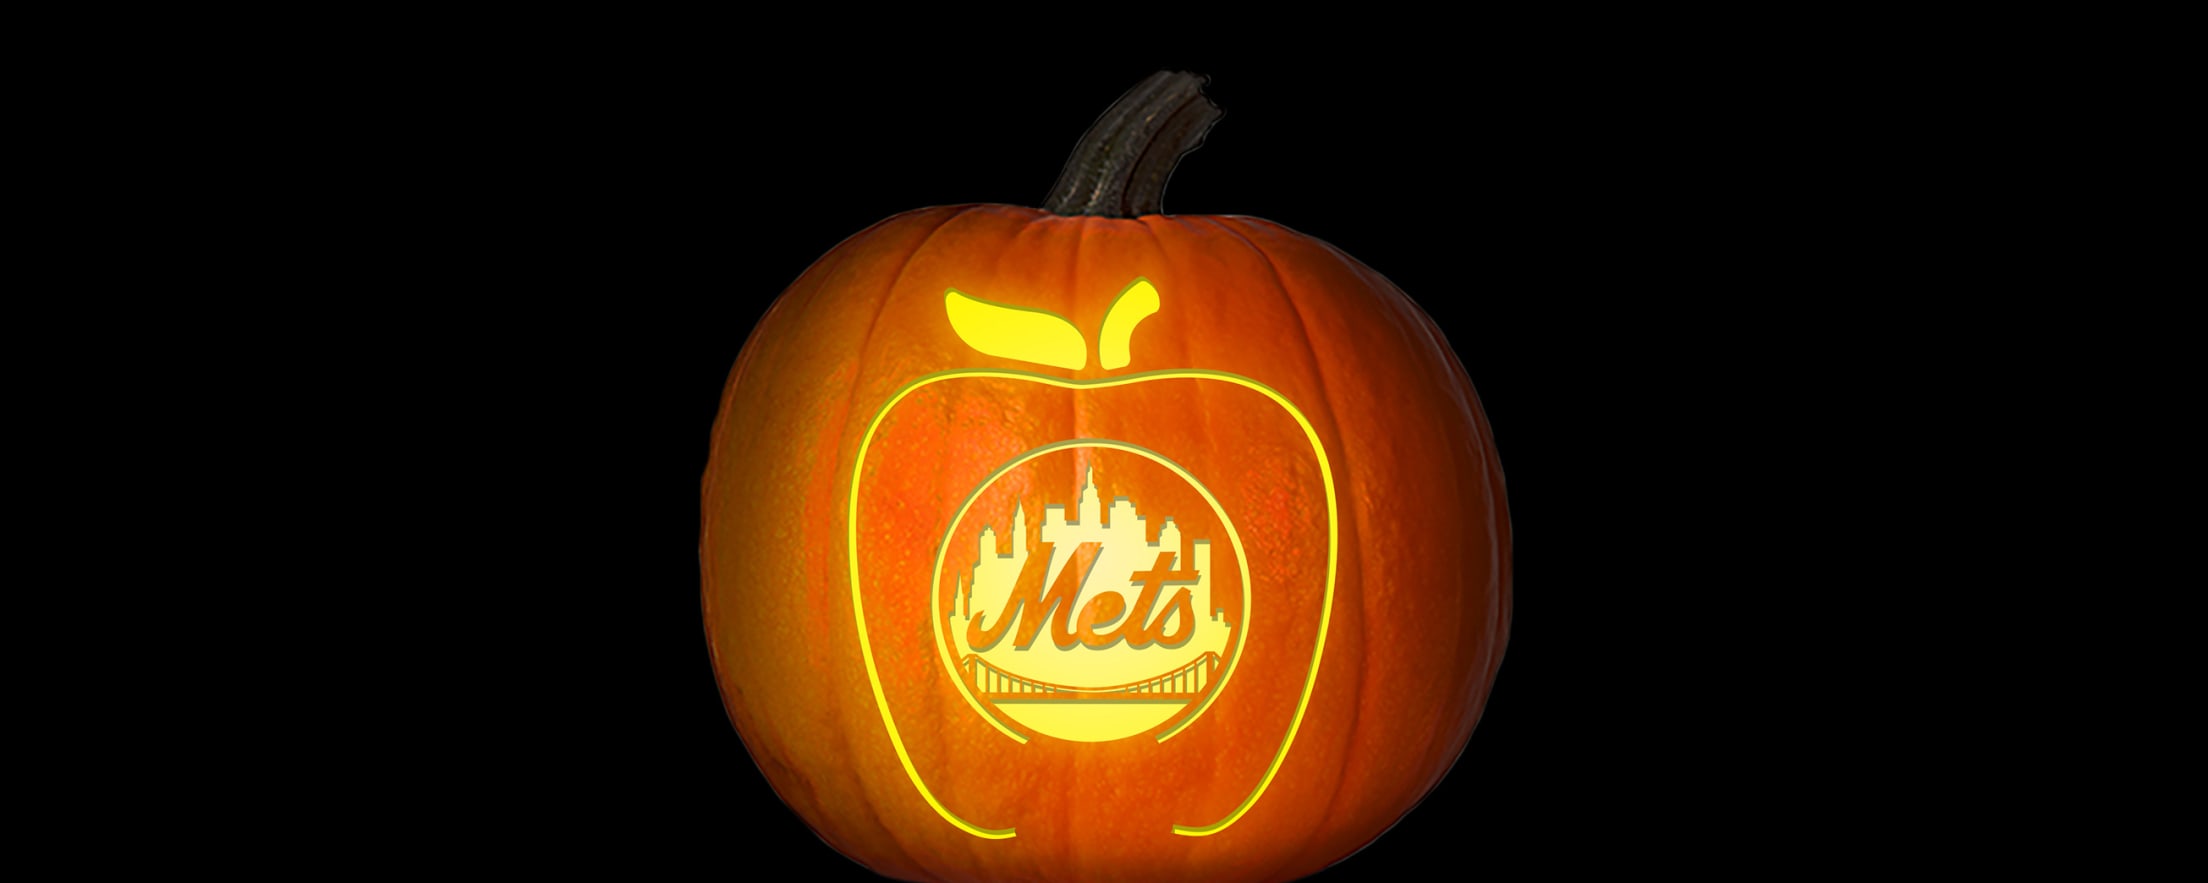 MLB Baseball: Boston Red Sox (Free Pumpkin Stencil - Pumpkin Pattern -  Pumpkin Template - Jack-o-lantern stencil) : r/PumpkinStencils